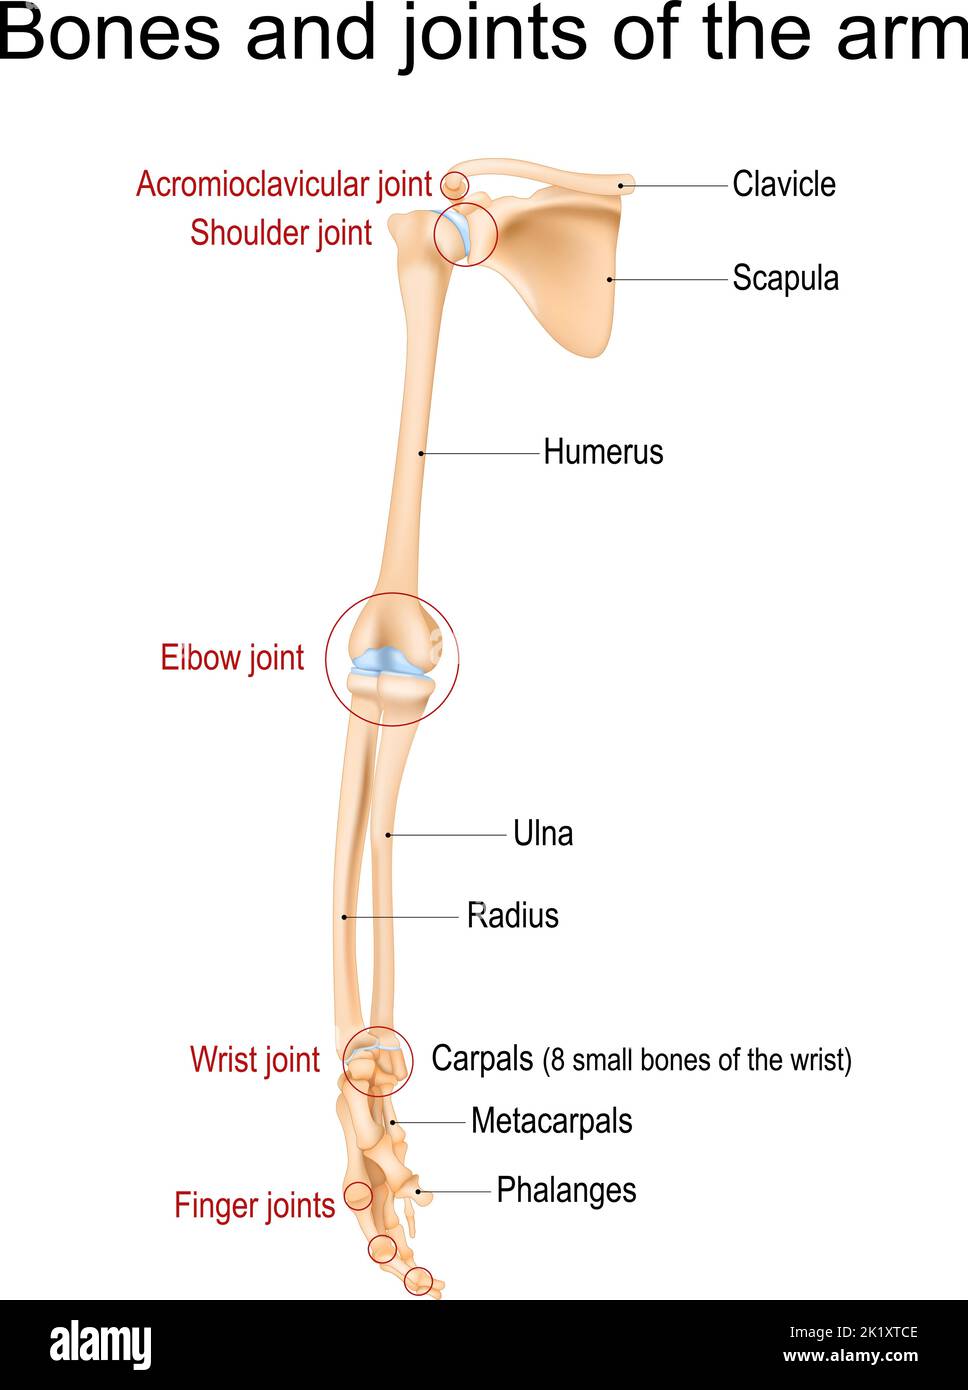 Anatomie des menschlichen Arms. Knochen und Gelenke von Arm, Unterarm und Hand. Vorderansicht des oberen Gliedes des Skeletts. Vektorgrafik Stock Vektor